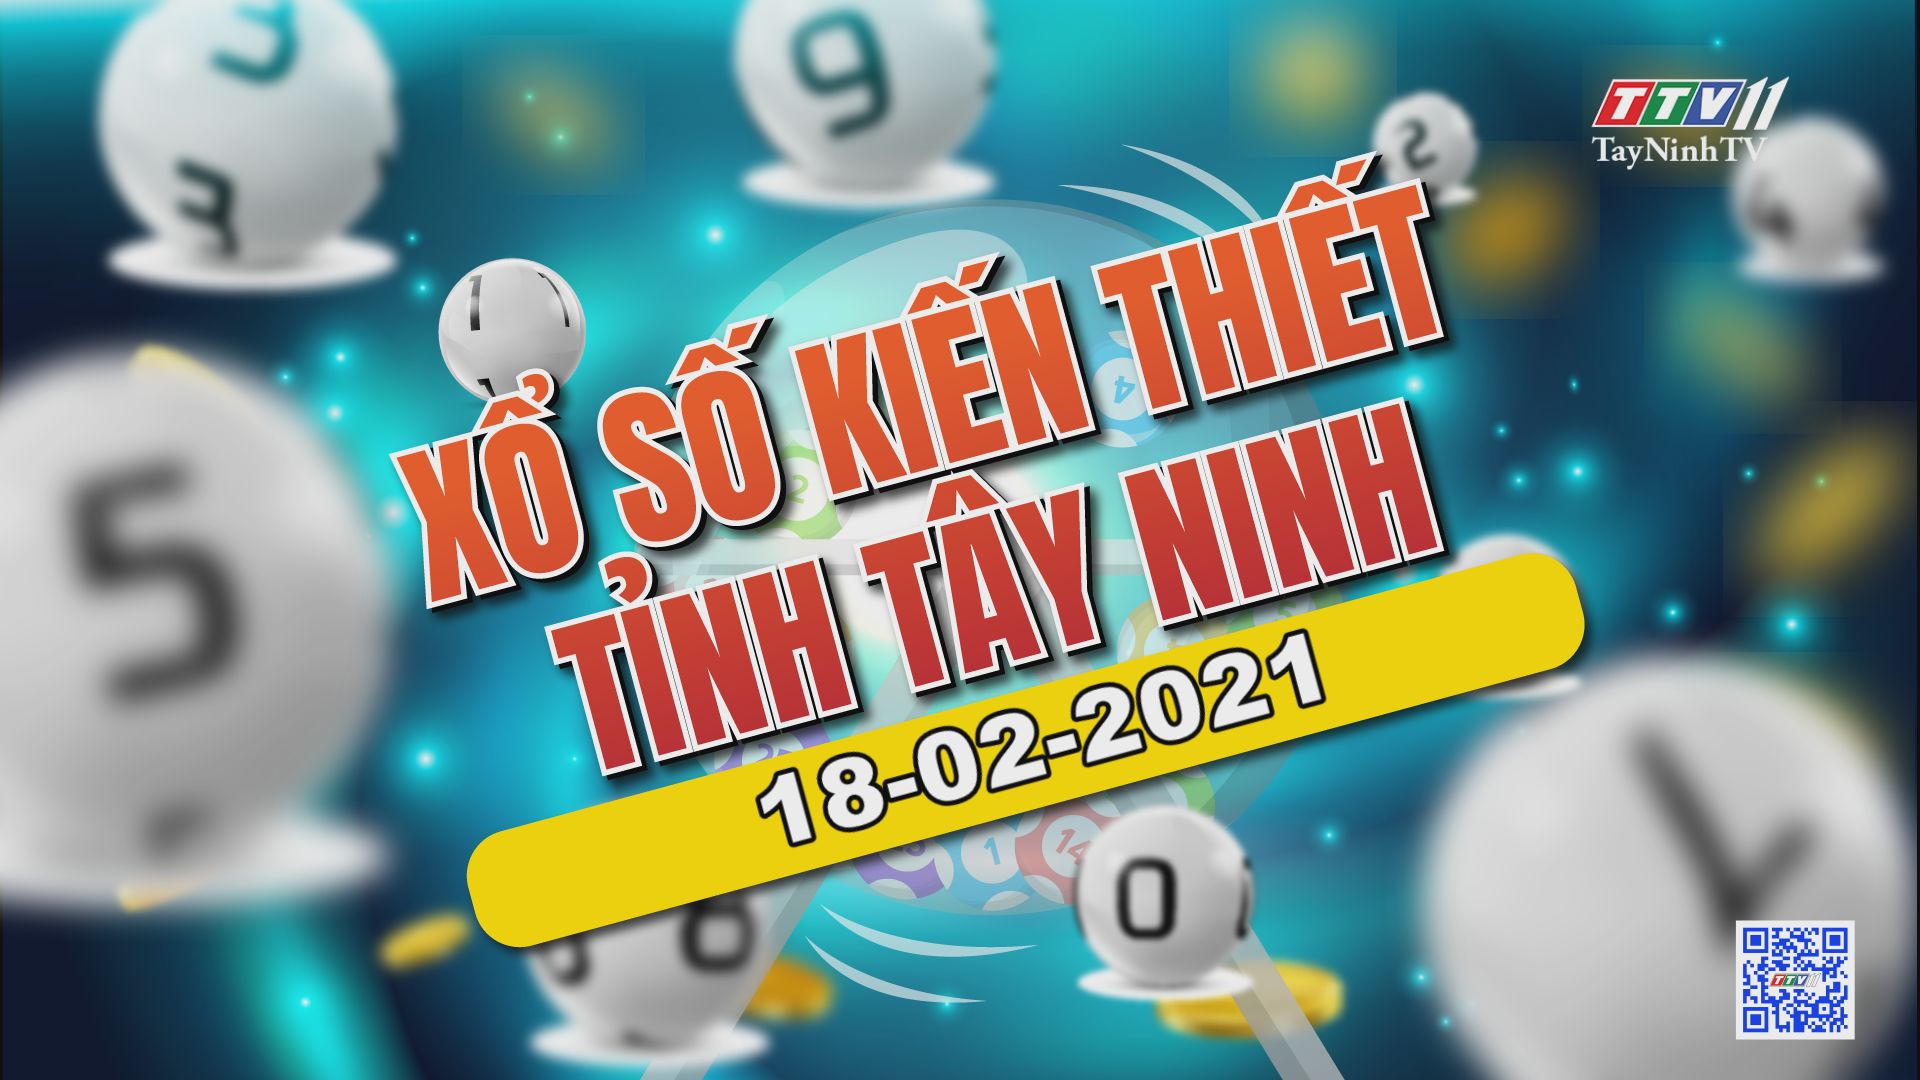 Trực tiếp Xổ số Tây Ninh ngày 18-02-2021 | TayNinhTVE